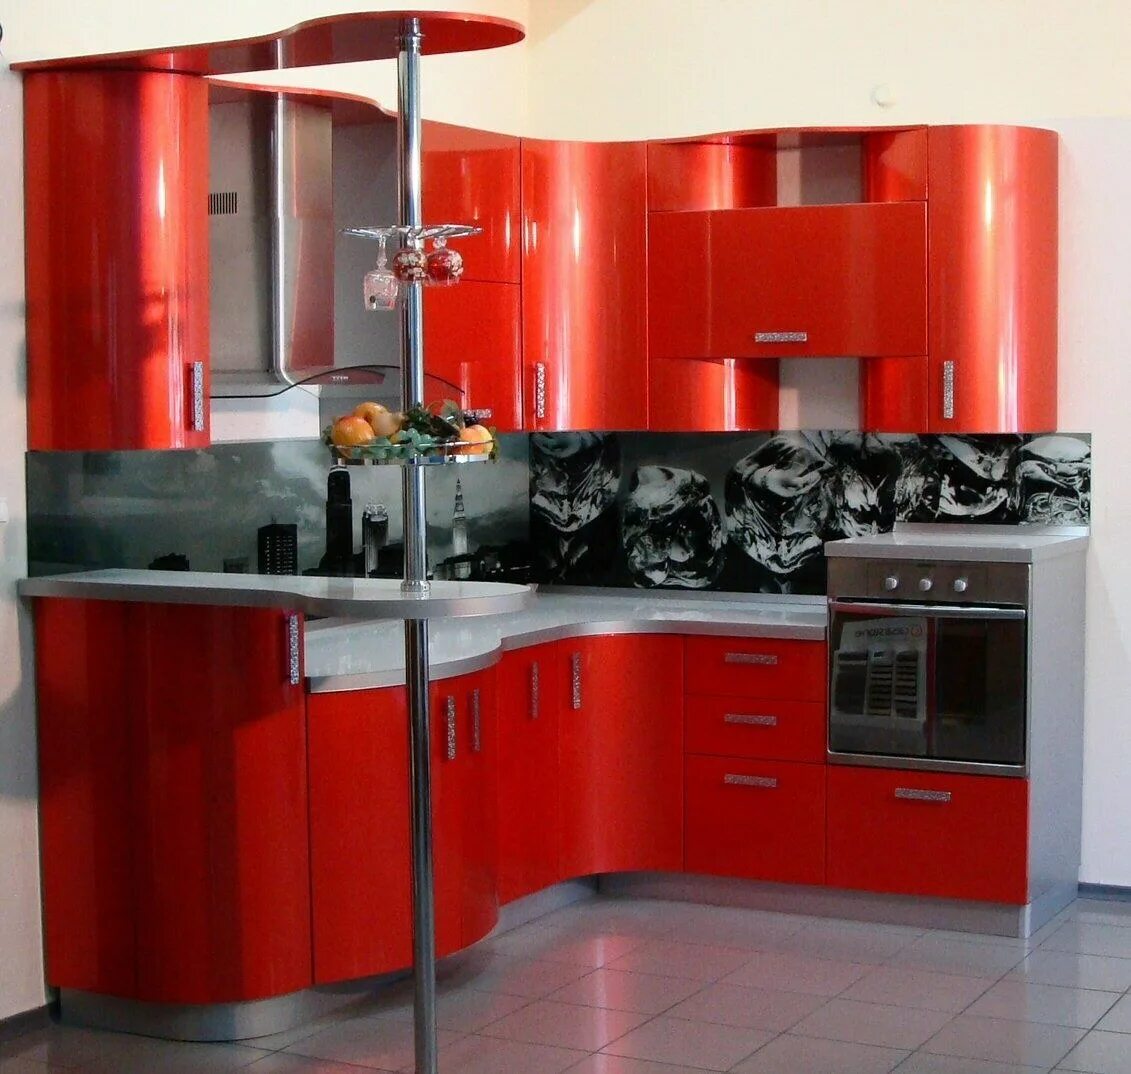 Кухни угловые хорошие. Кухонный гарнитур. Угловые кухни. Кухонные гарнитуры угловые. Кухня в Красном цвете.